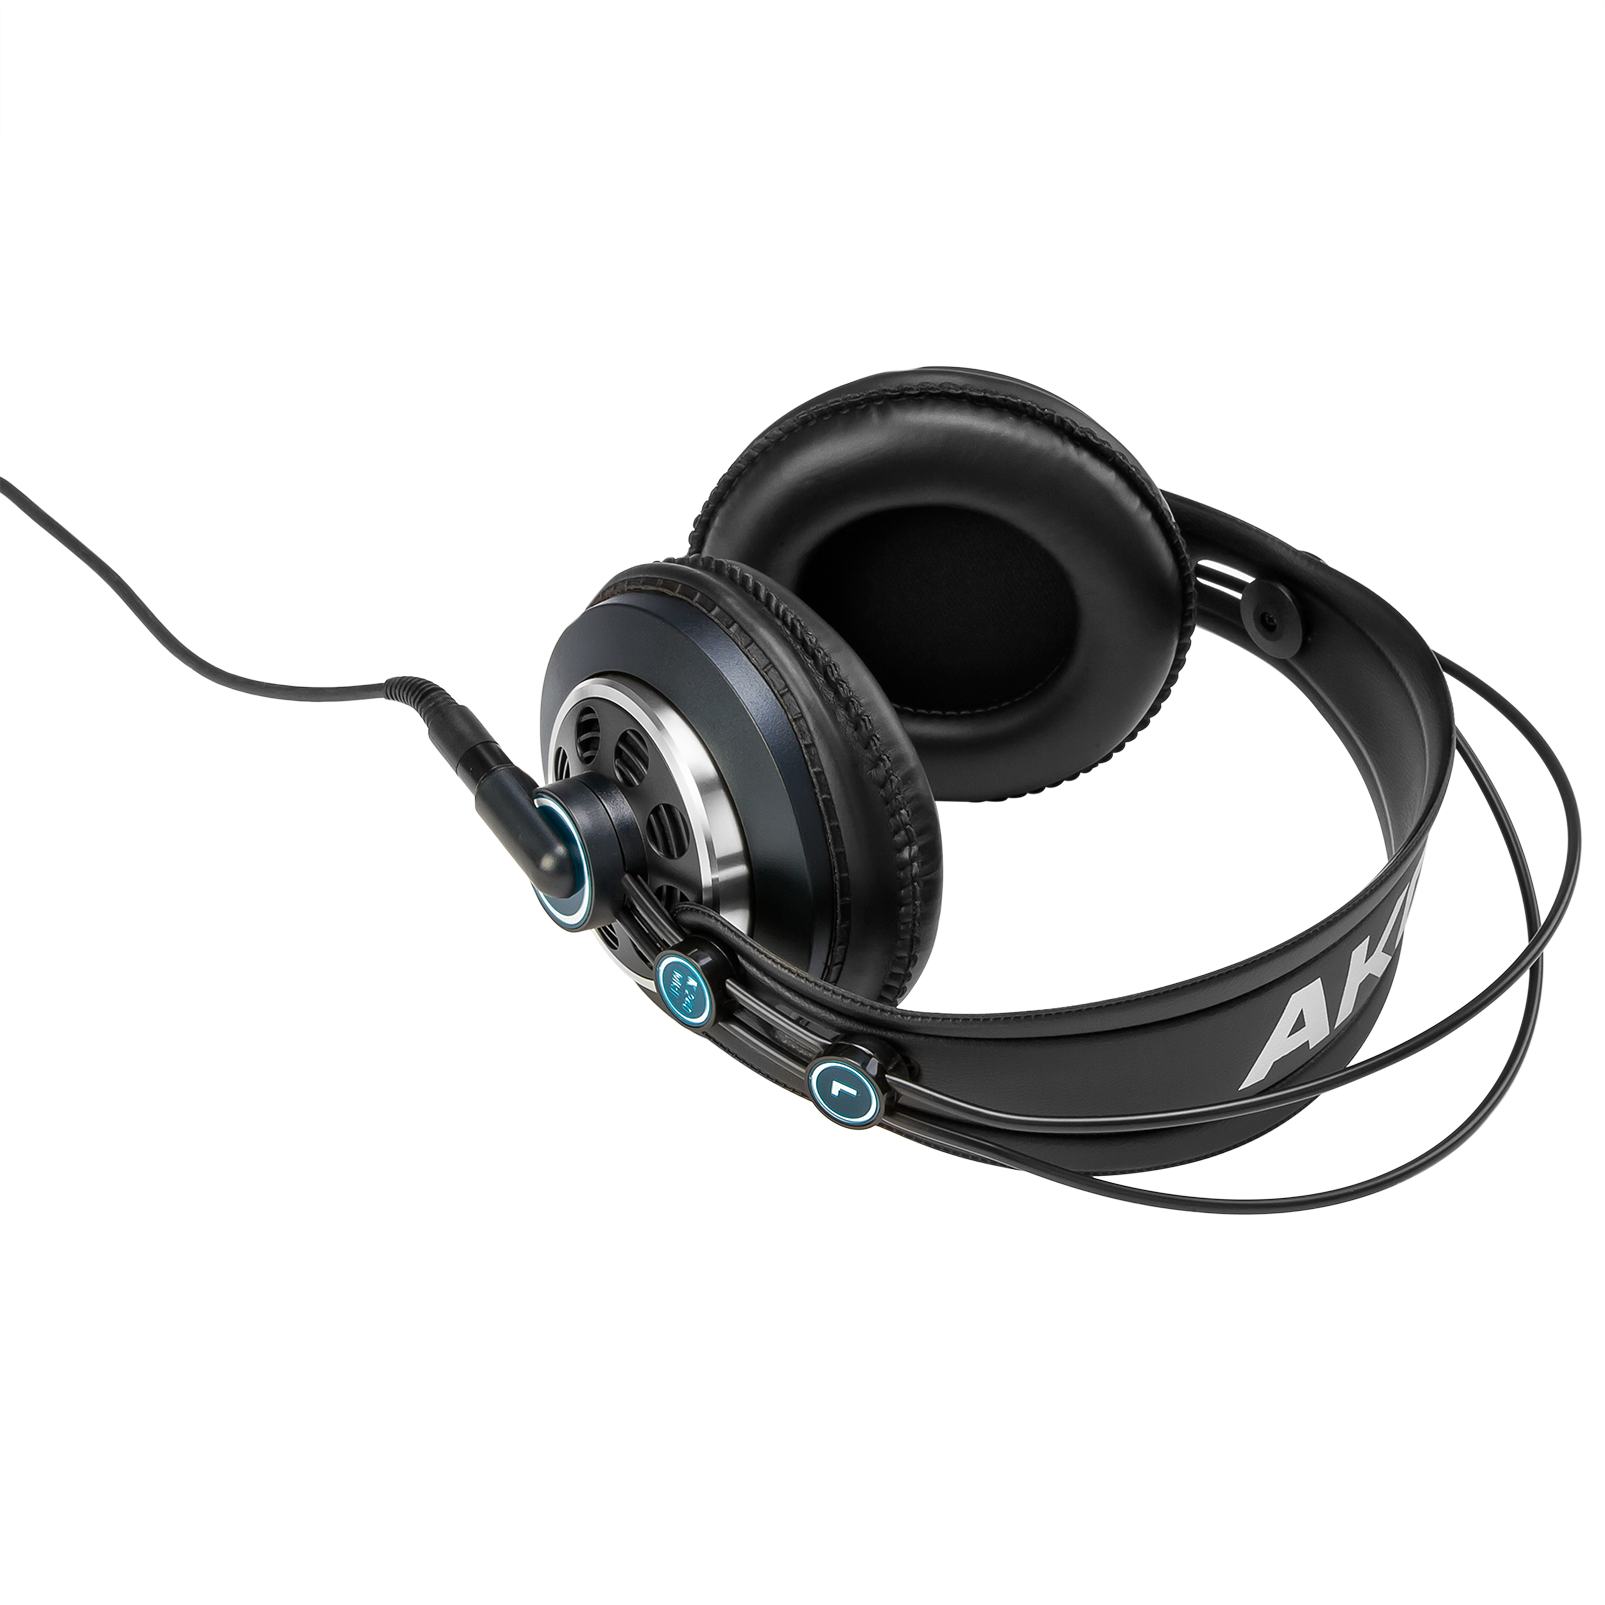 AKG K240 Studio - headphones - 2058X00130 - Headphones 